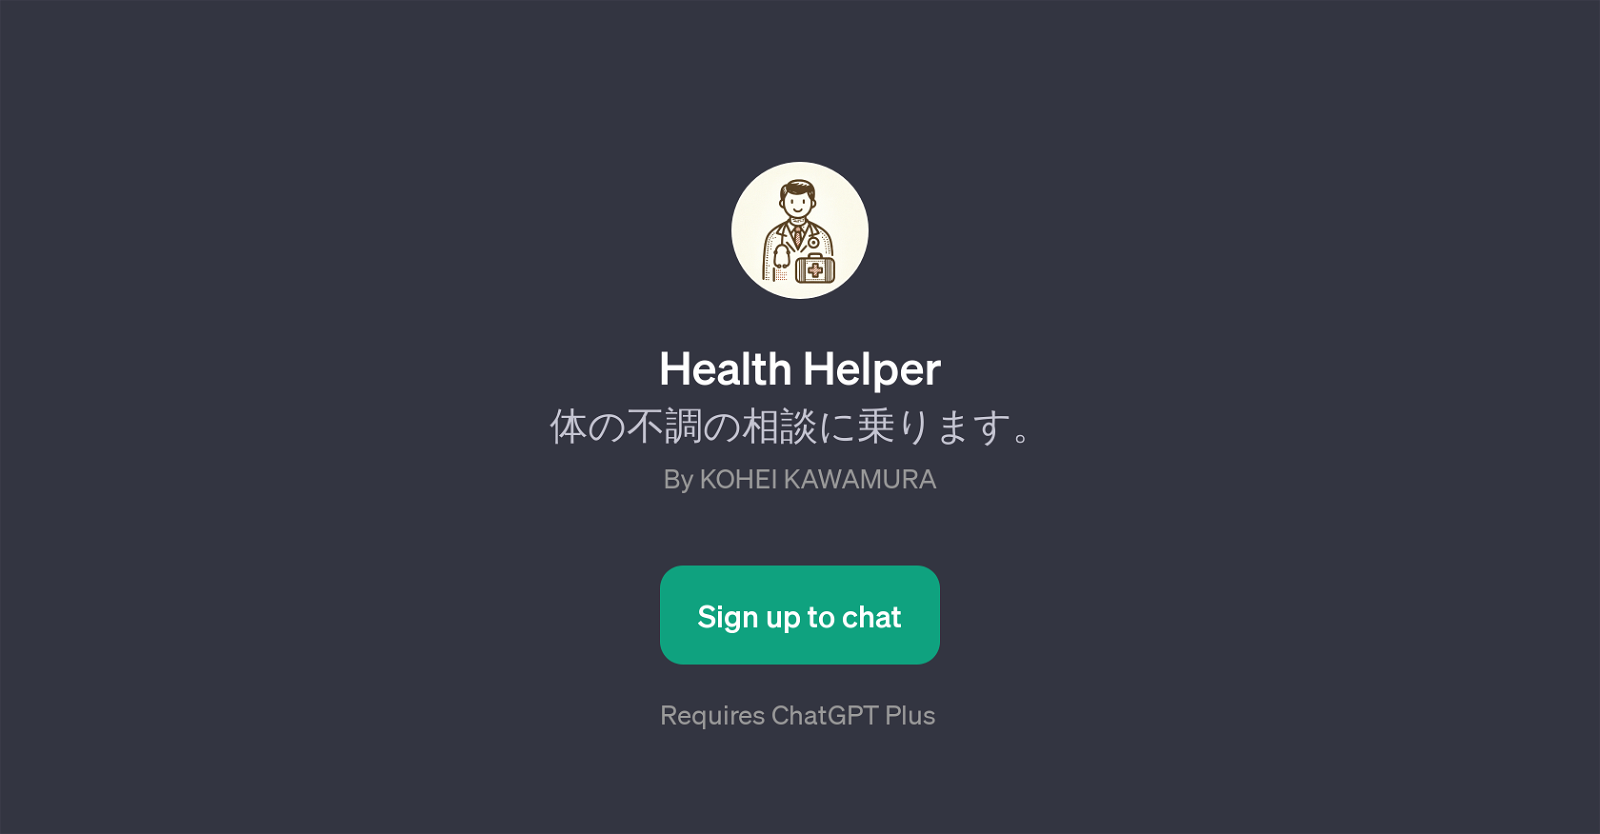 Health Helper website